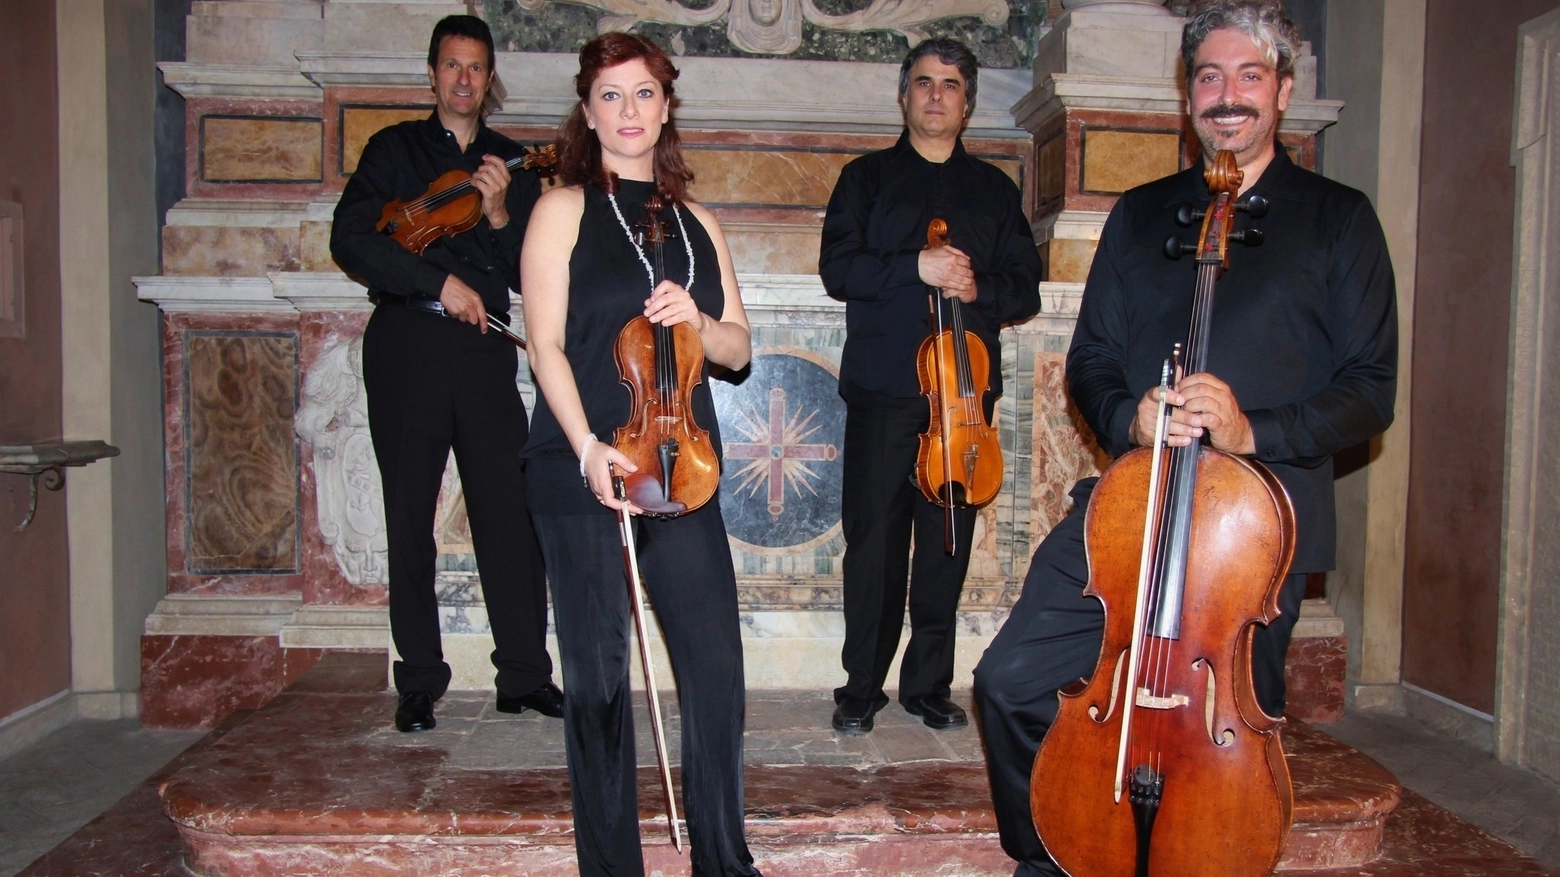 Si esibirà alla chiesa di San Nicolò per un concerto a ingresso libero organizzato dalla scuola musicale Pergolesi